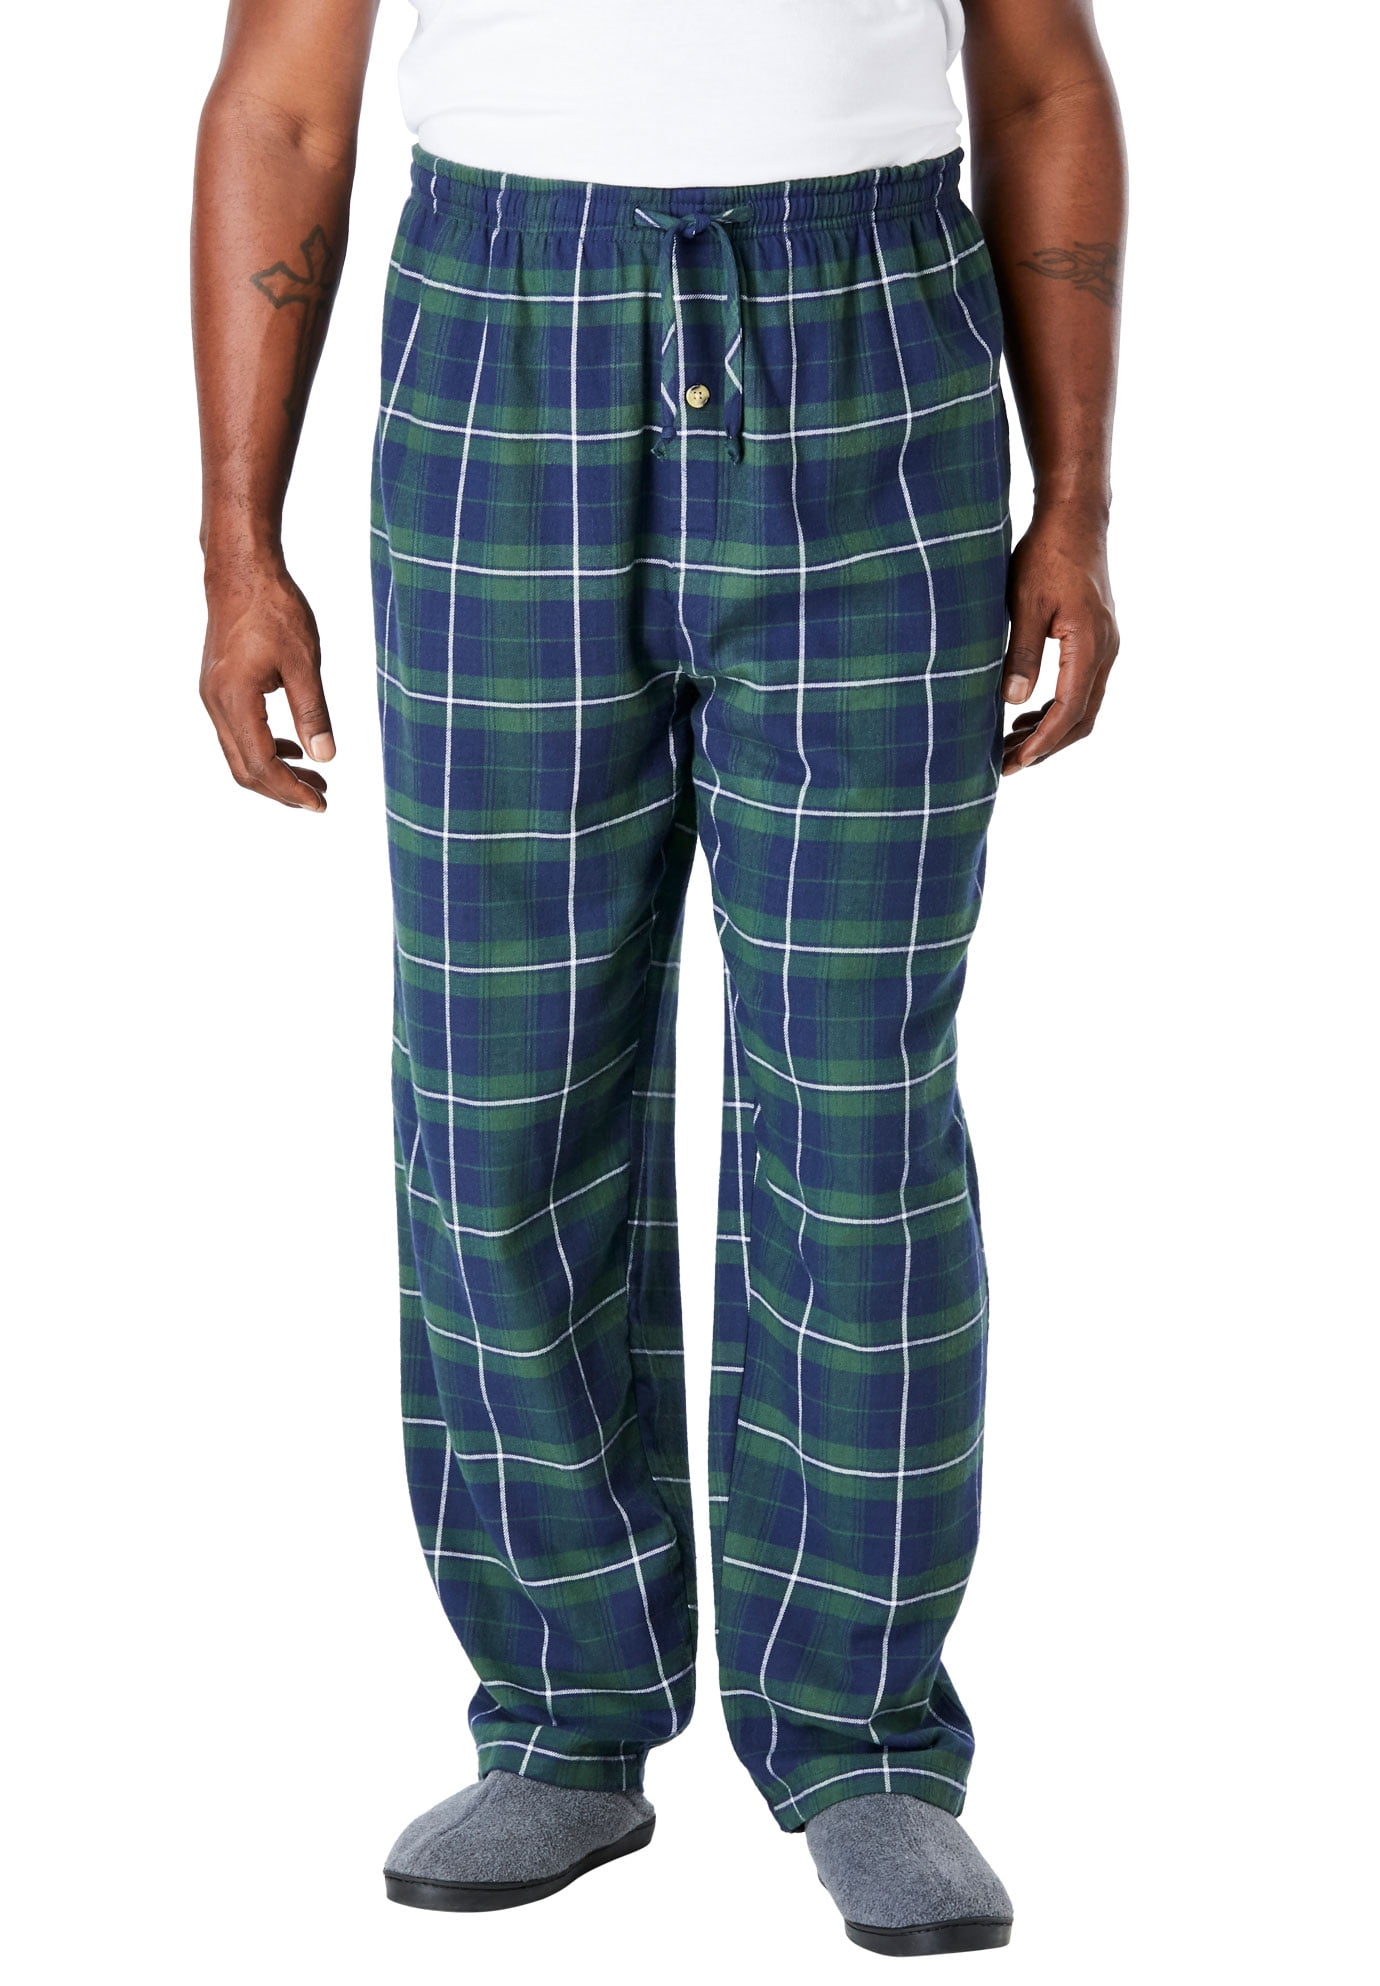 Kingsize - Kingsize Men's Big & Tall Flannel Plaid Pajama Pants ...